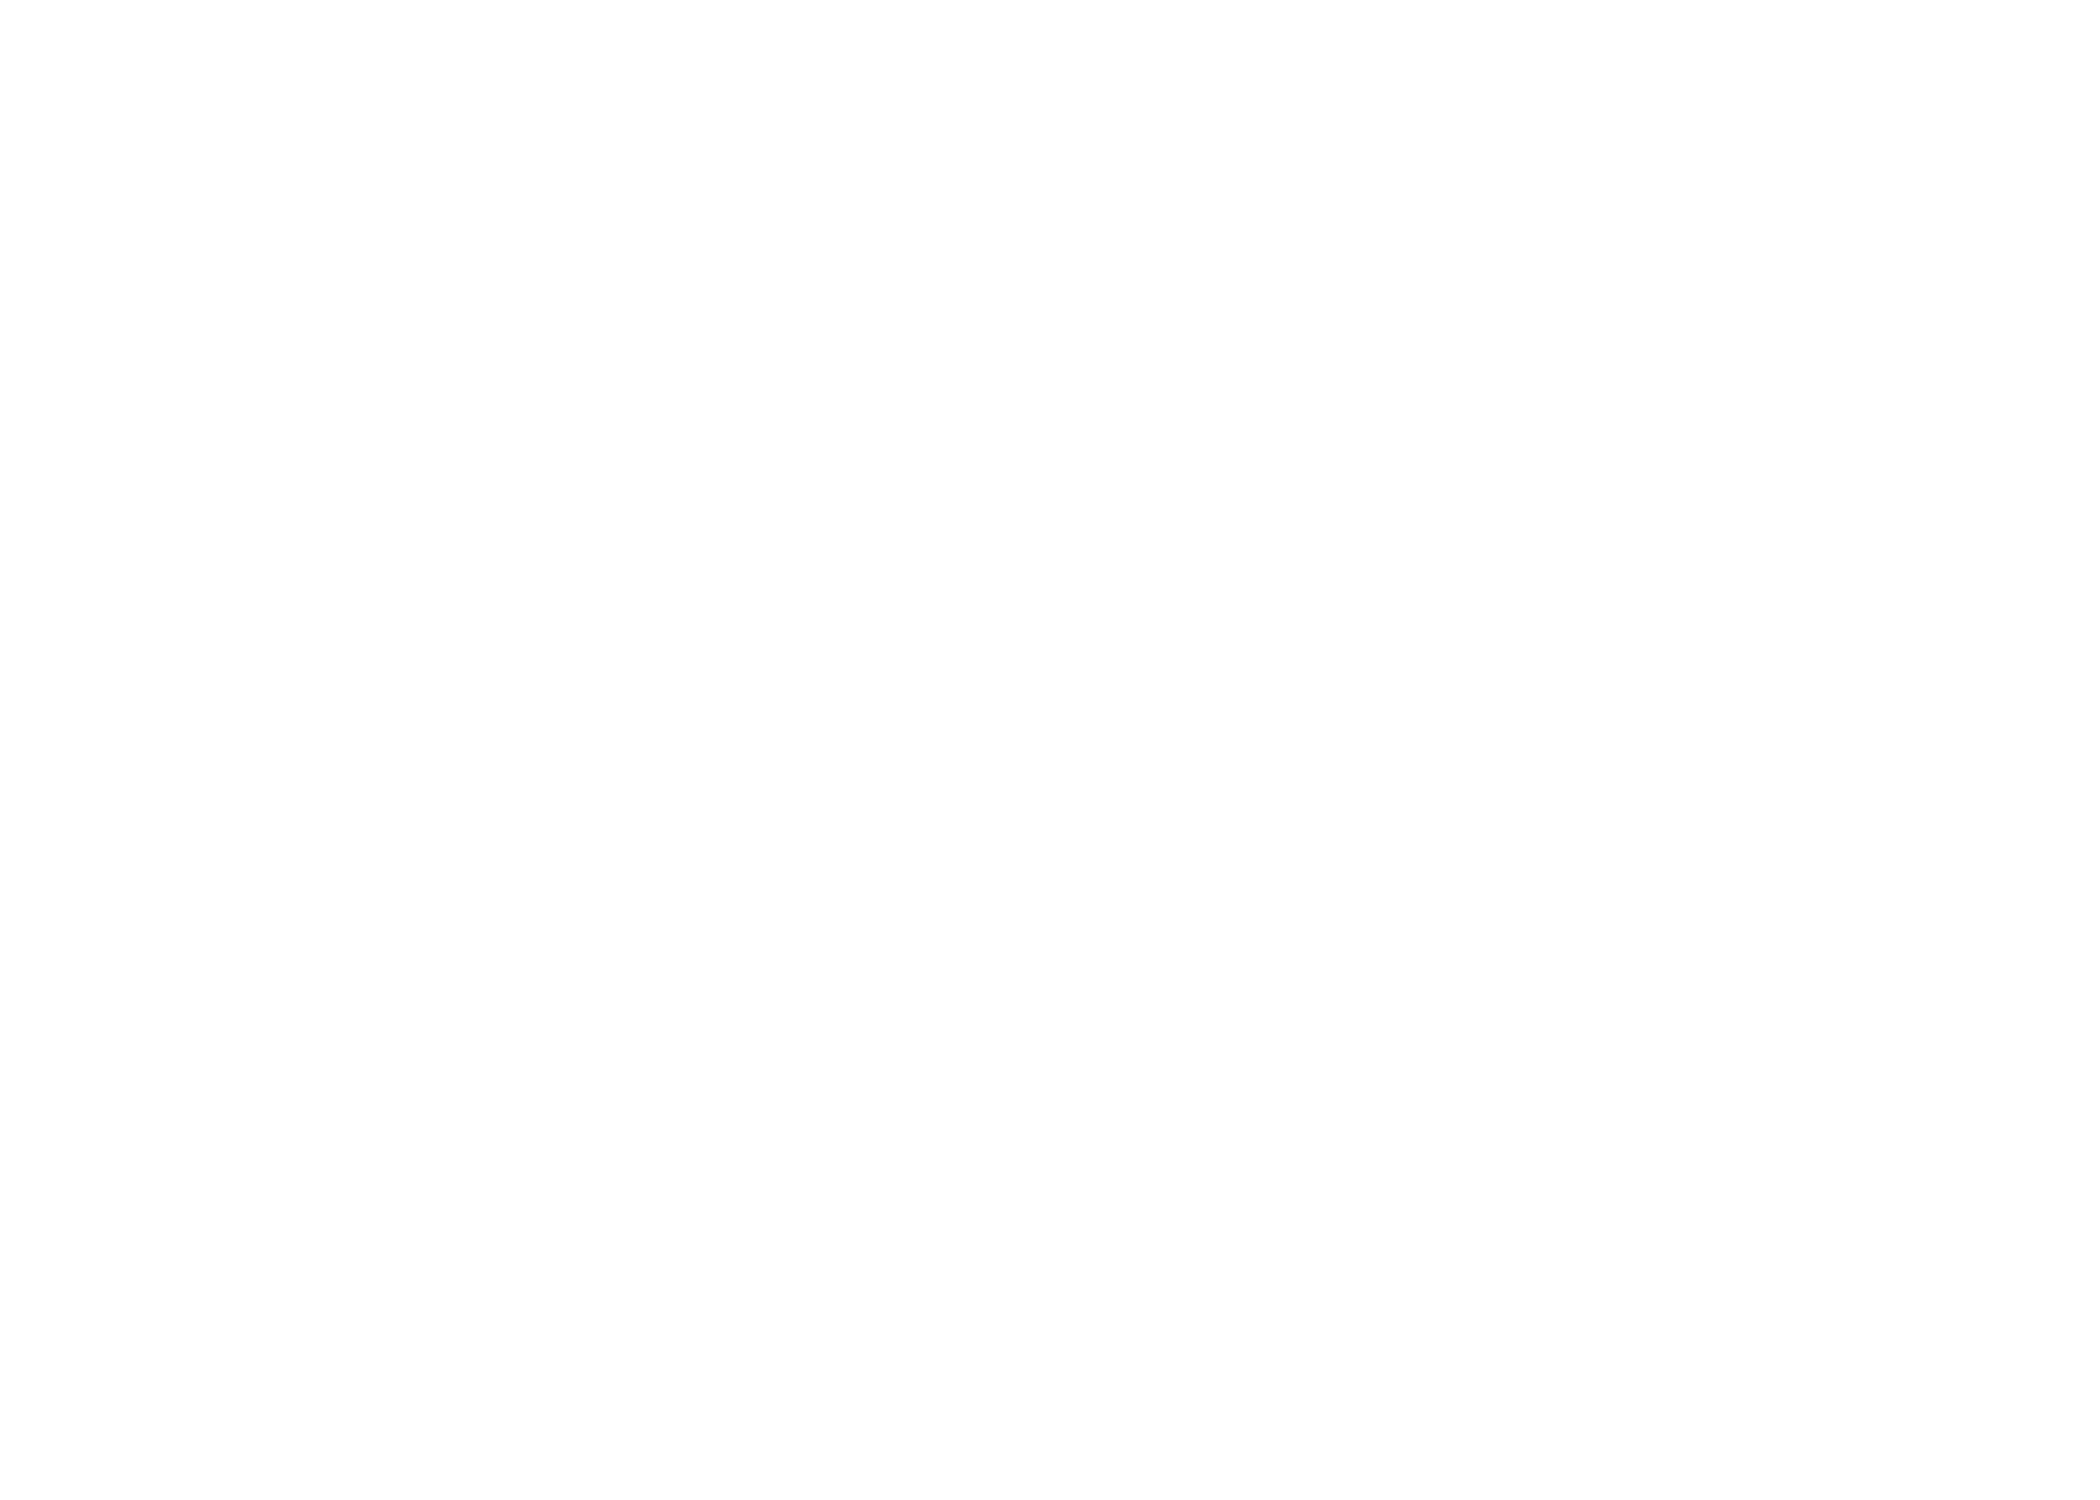 sfx-small